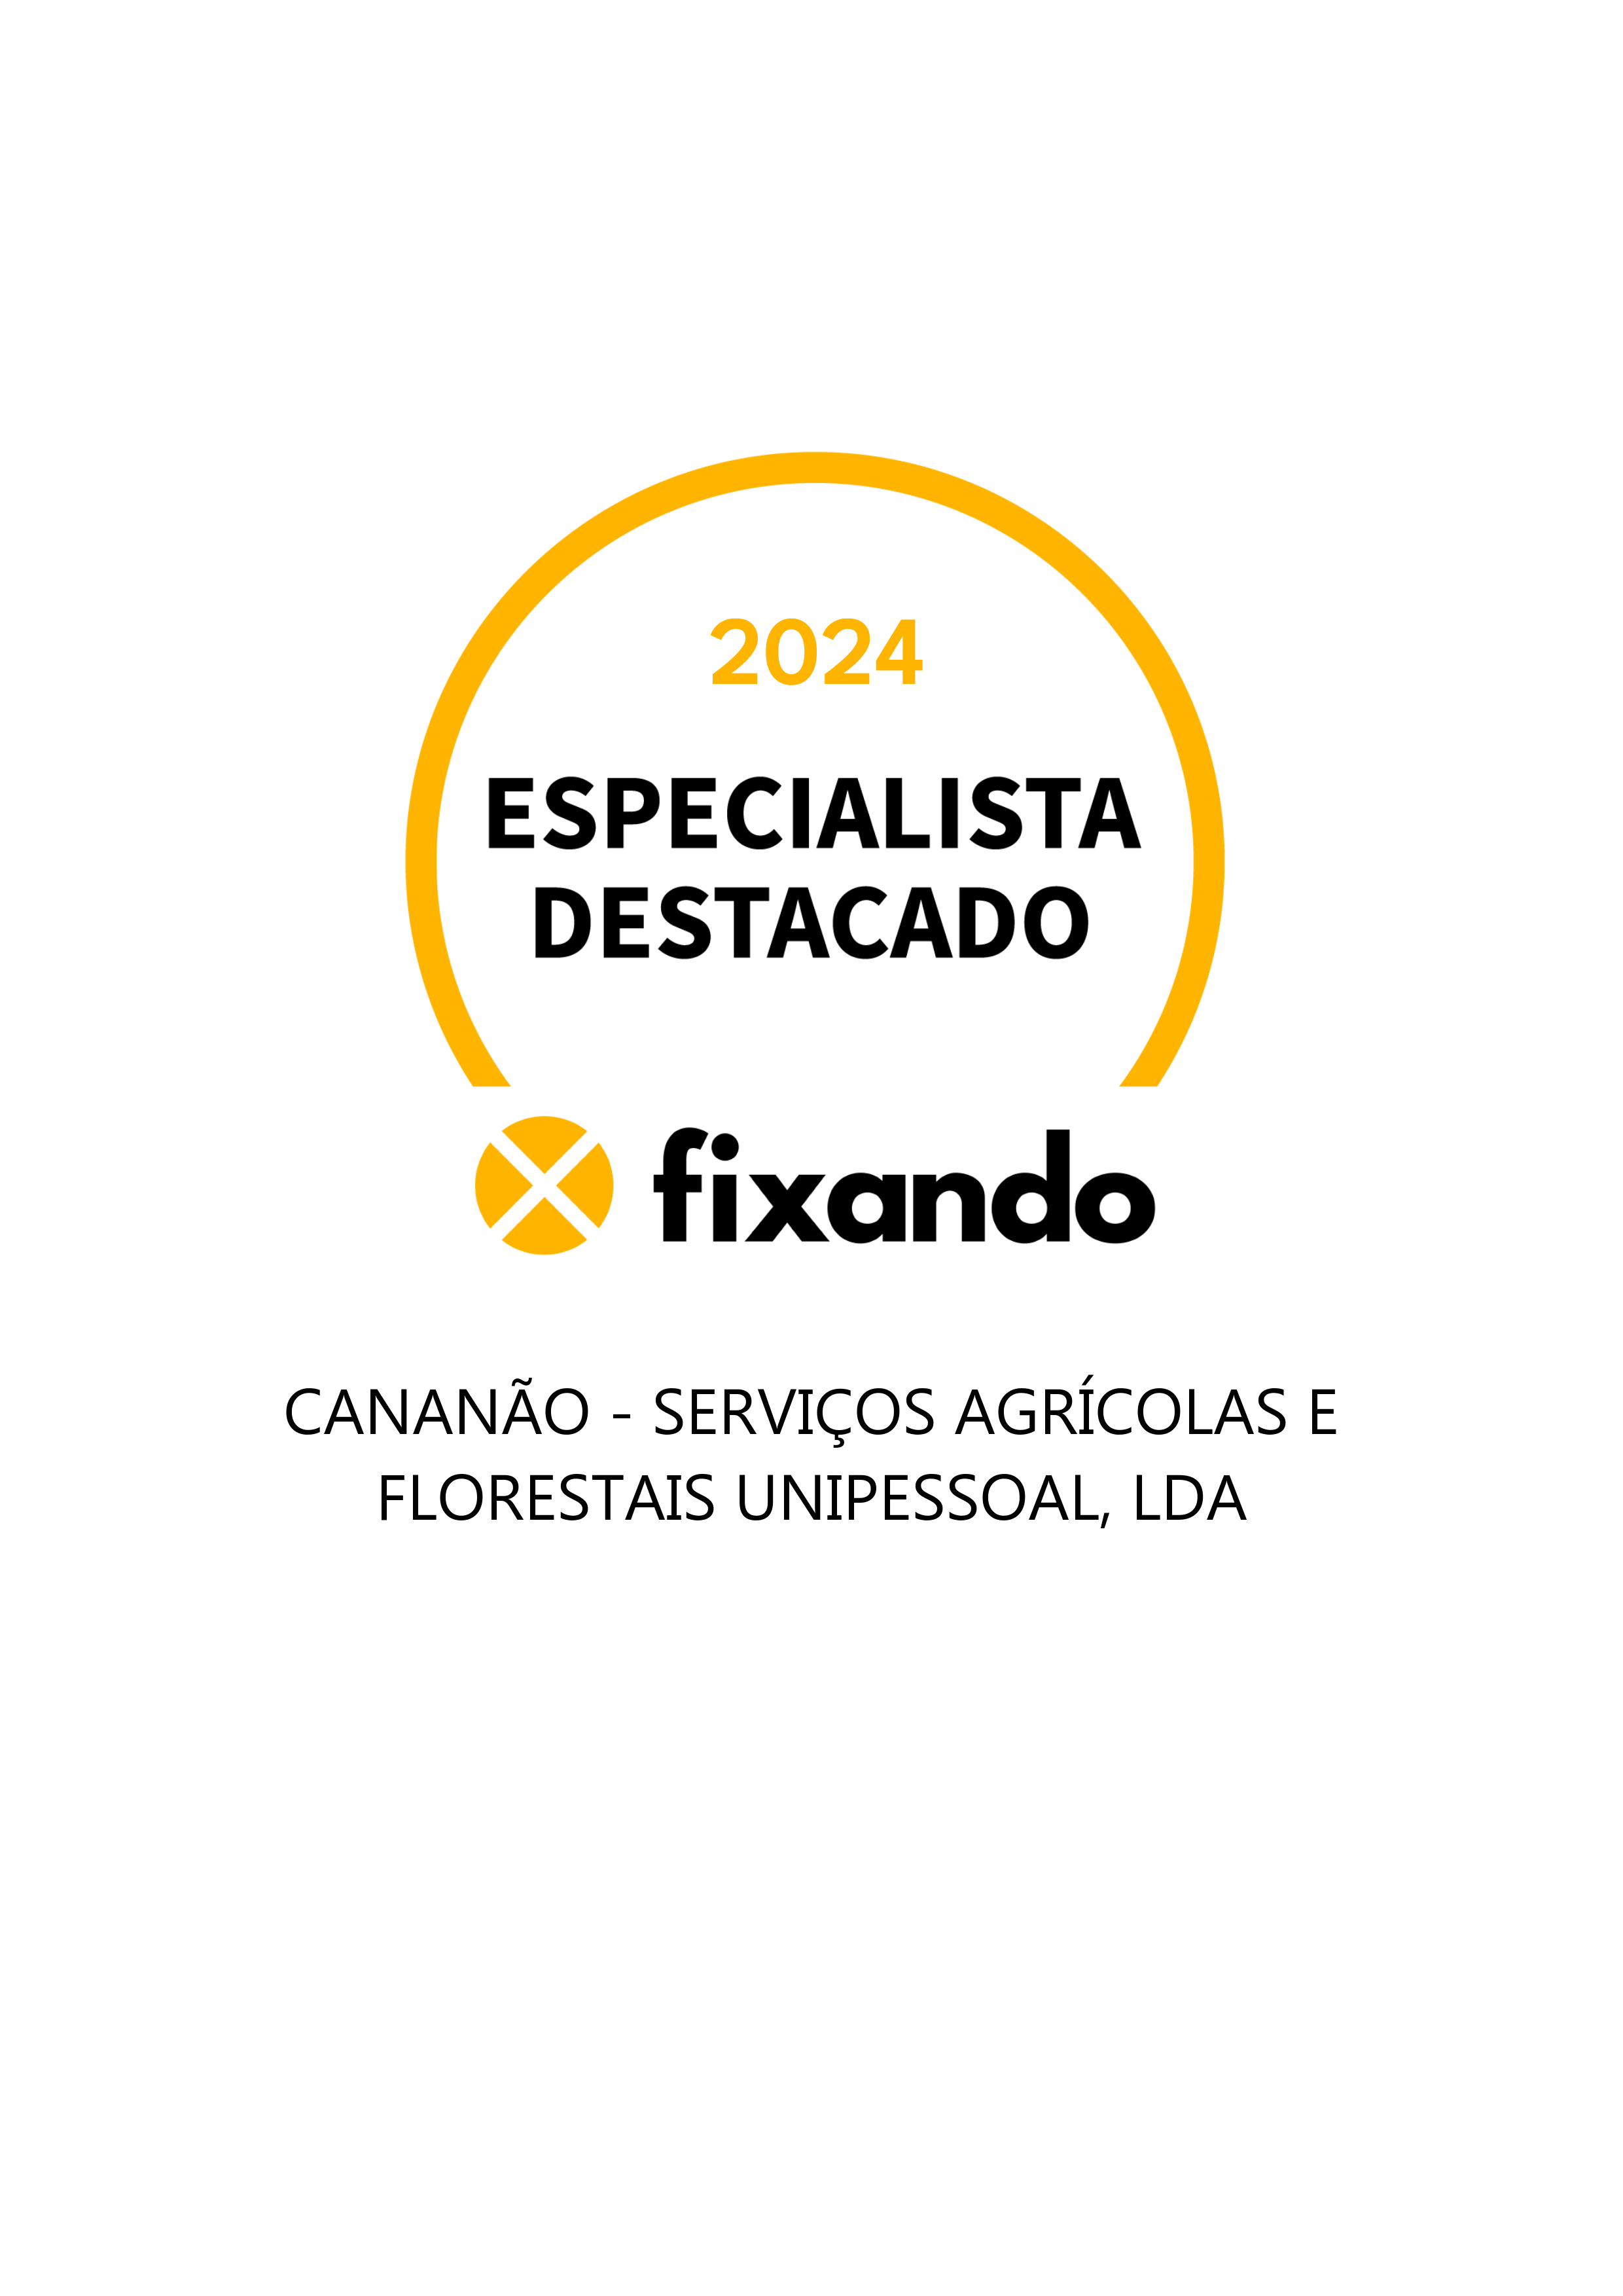 Cananão - serviços agrícolas e florestais unipessoal, Lda - Viana do Alentejo - Paisagismo